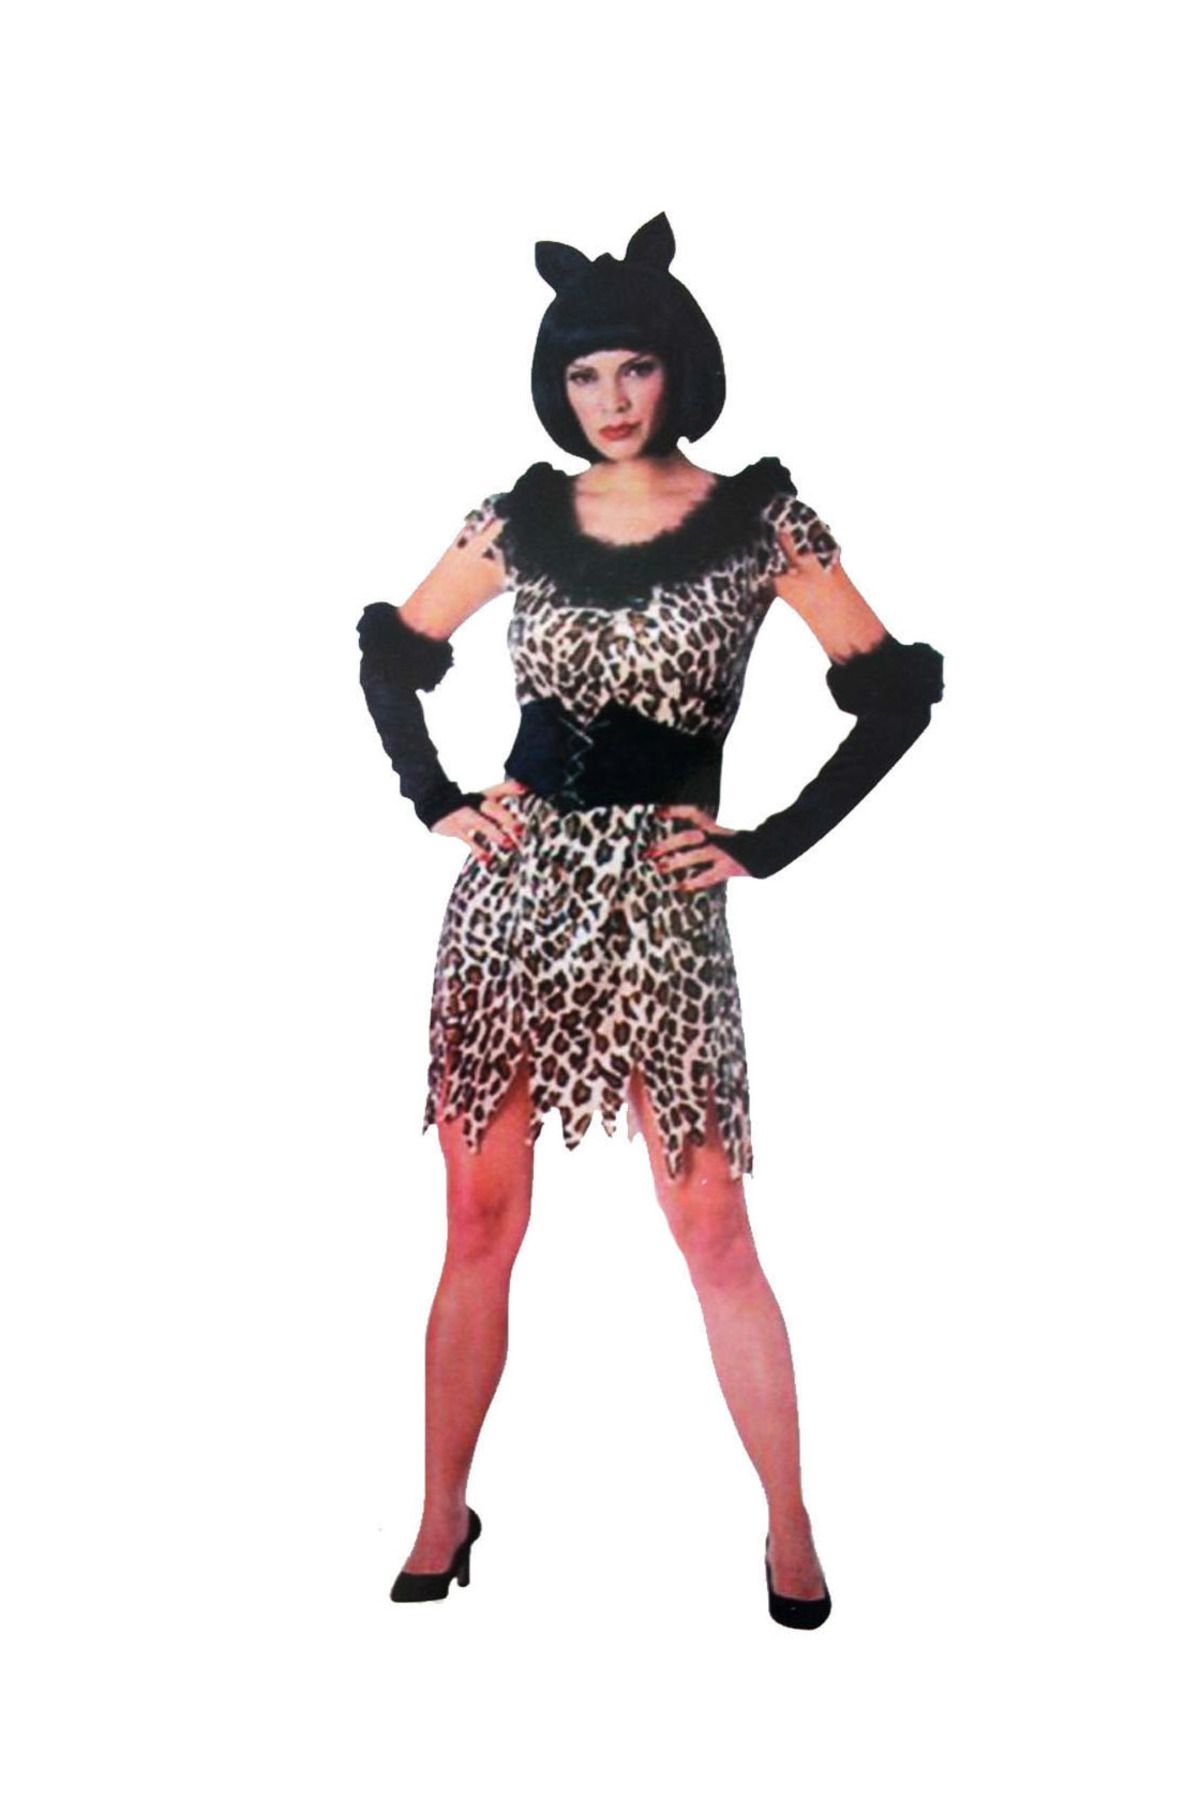 ToptanGidiyor Yetişkin Leopar Kostümü - Kedi Kız Kostümü - Taş Devri Kostümü